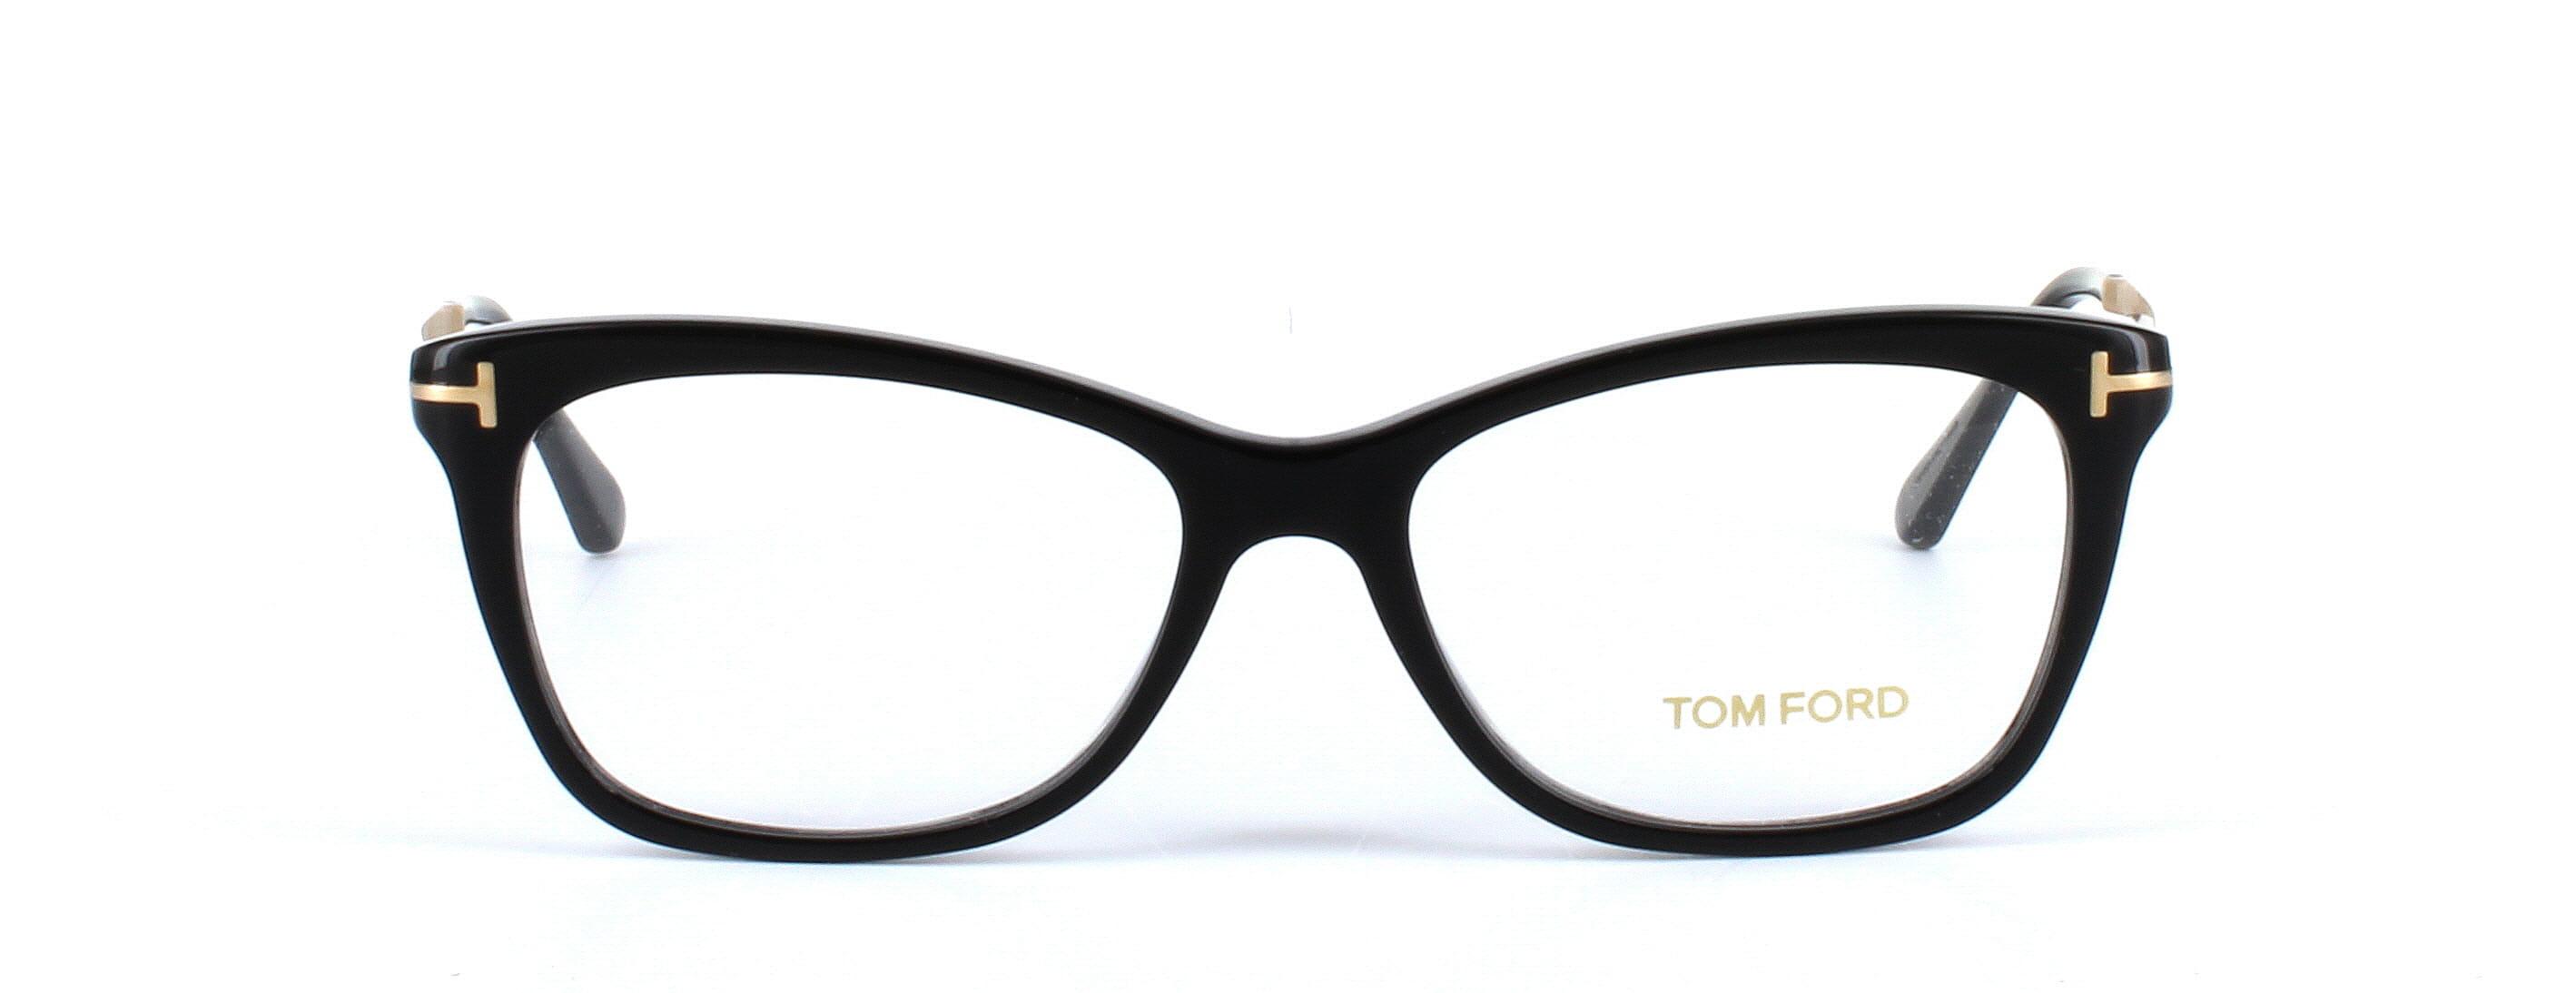 Tom Ford glasses - FT5353 - shiny black image 5